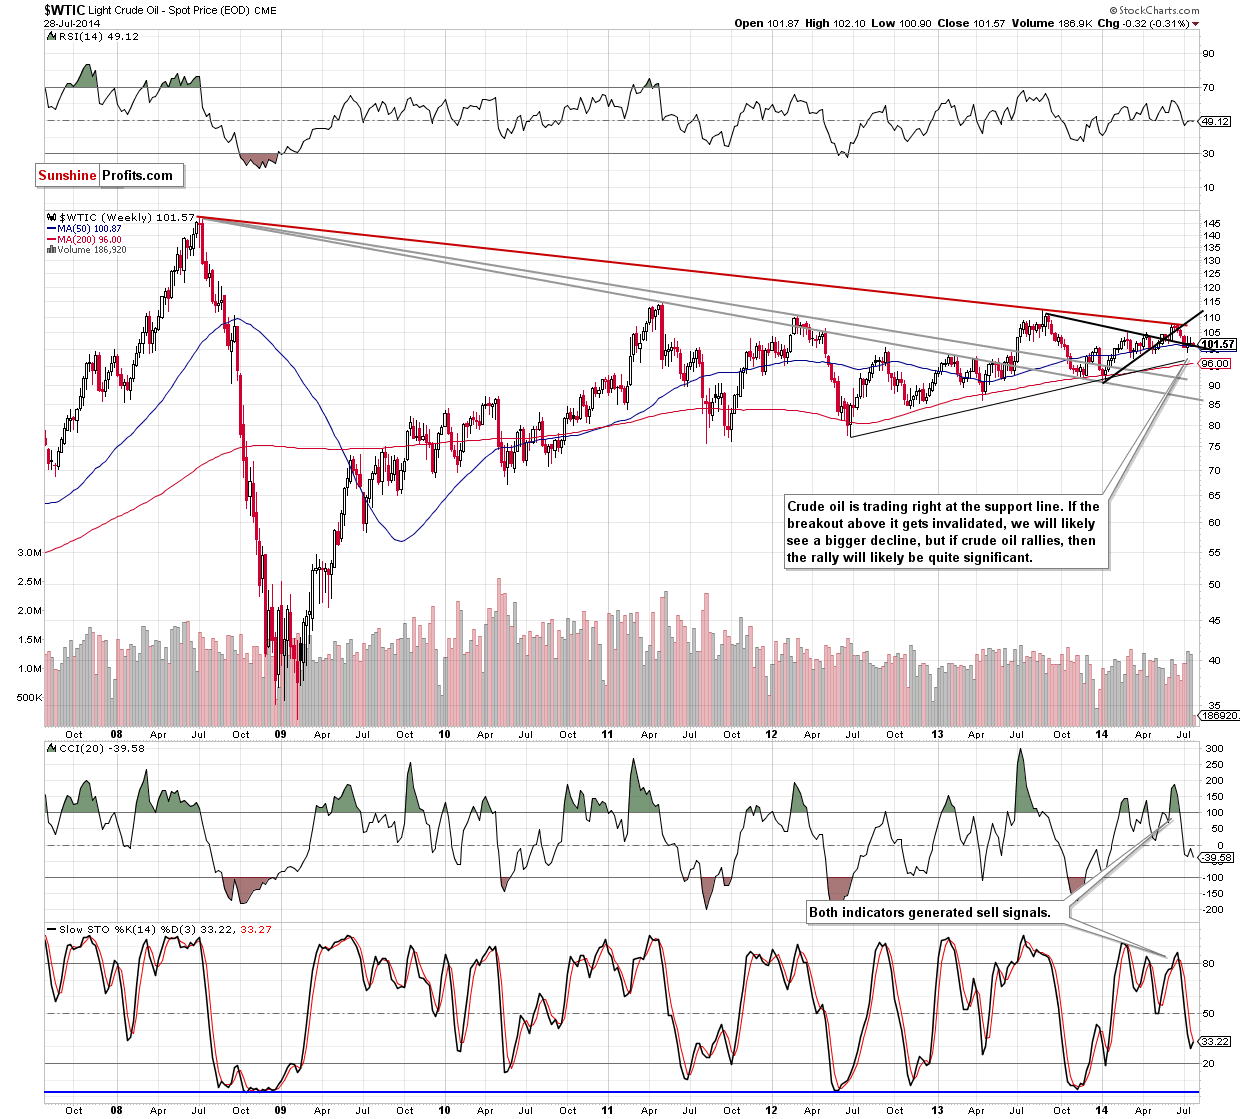 WTI Crude Oil weekly chart